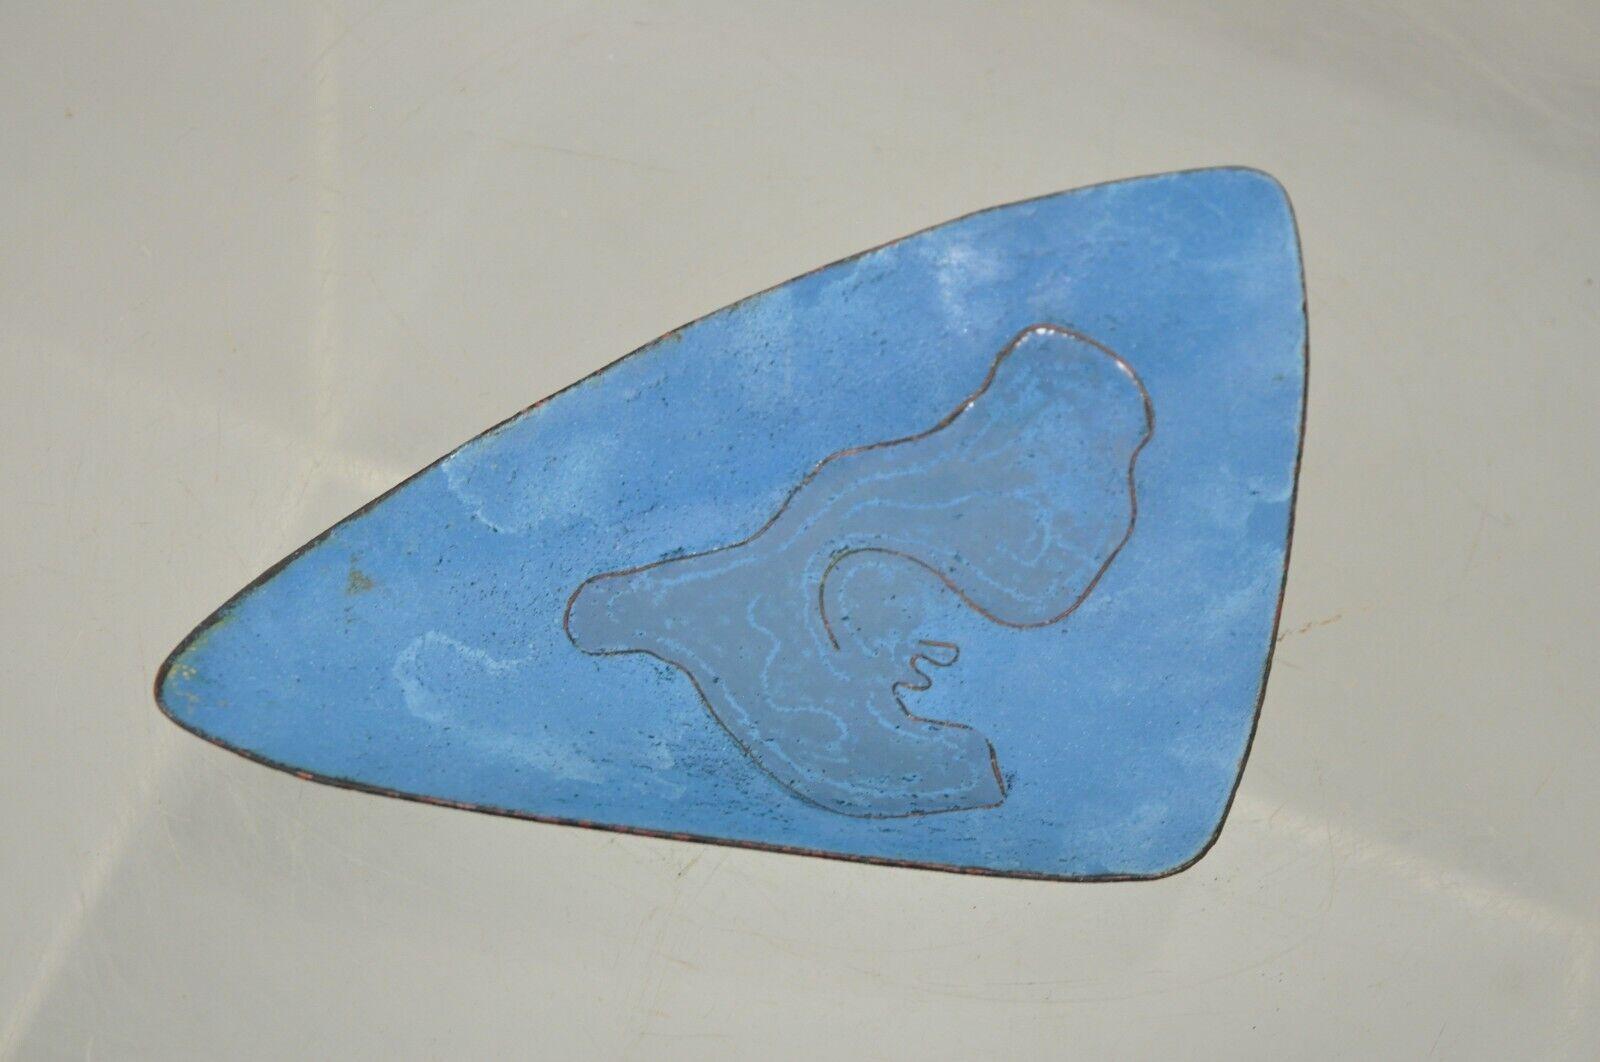 Dreieckige Mid-Century Modern-Trinkschale aus blauem Porzellan, Emaille und Kupfer, 20,3 cm (8